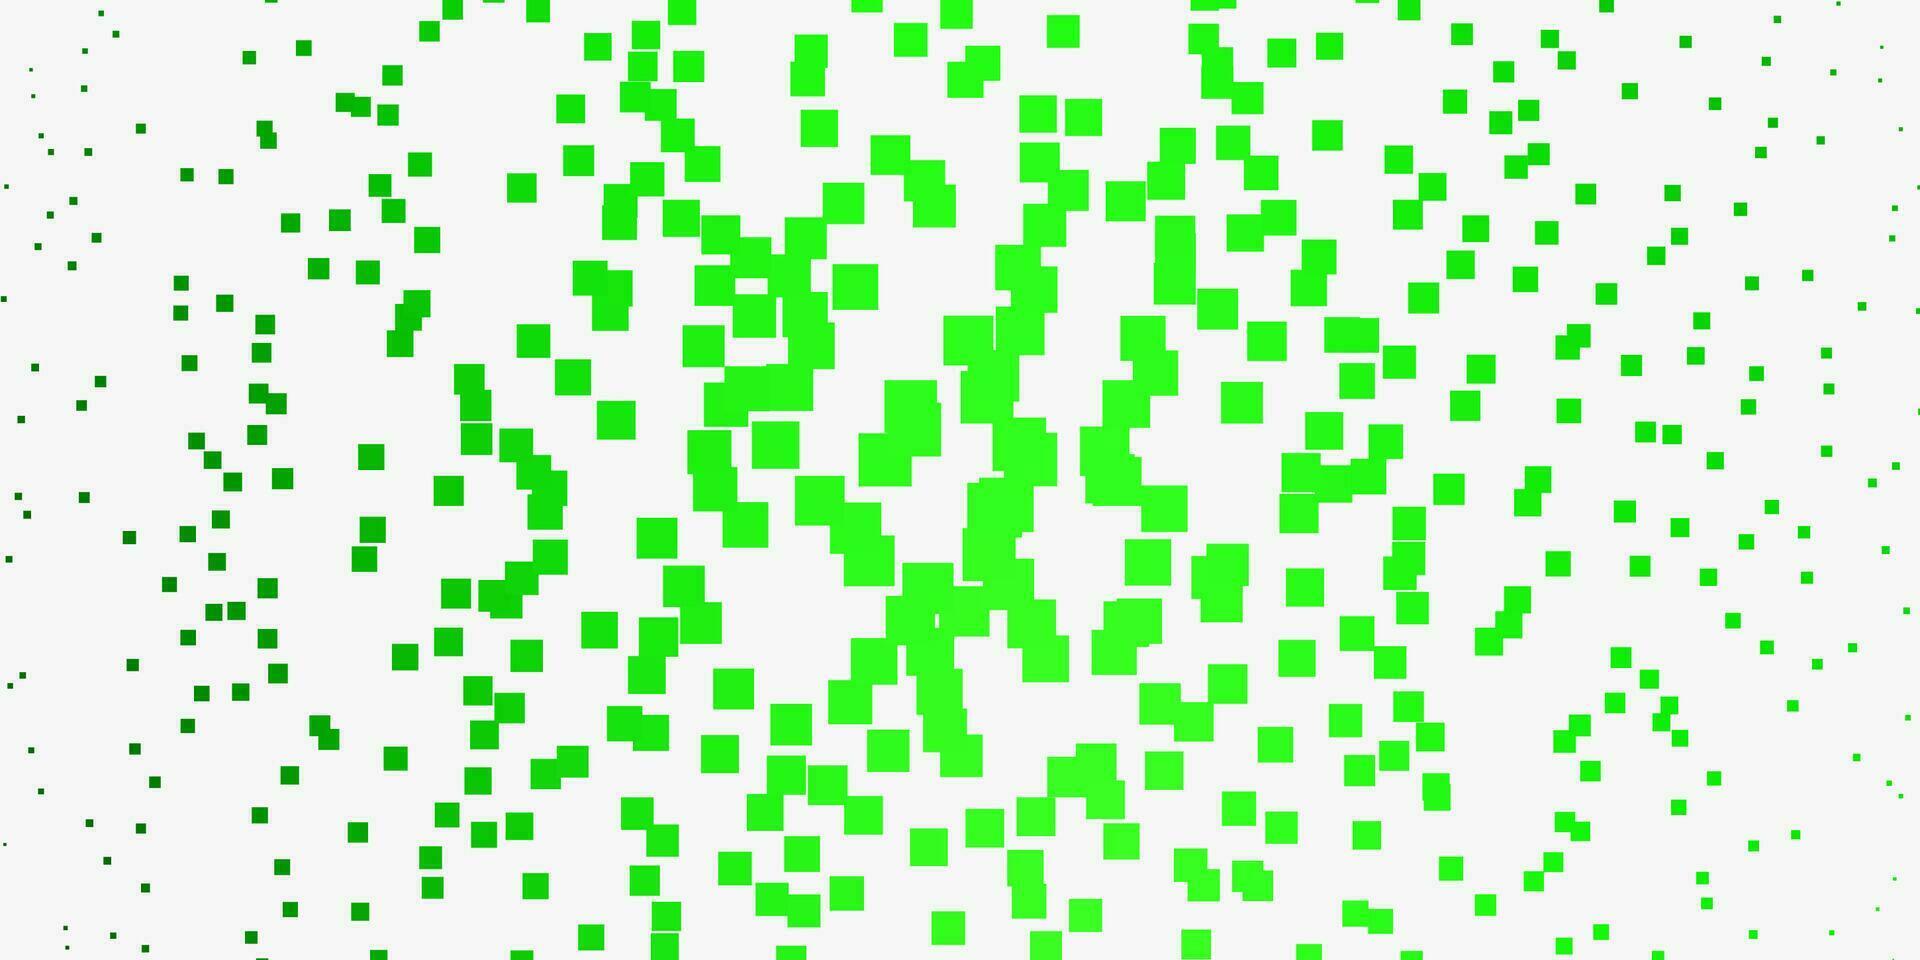 plantilla de vector verde claro con rectángulos.